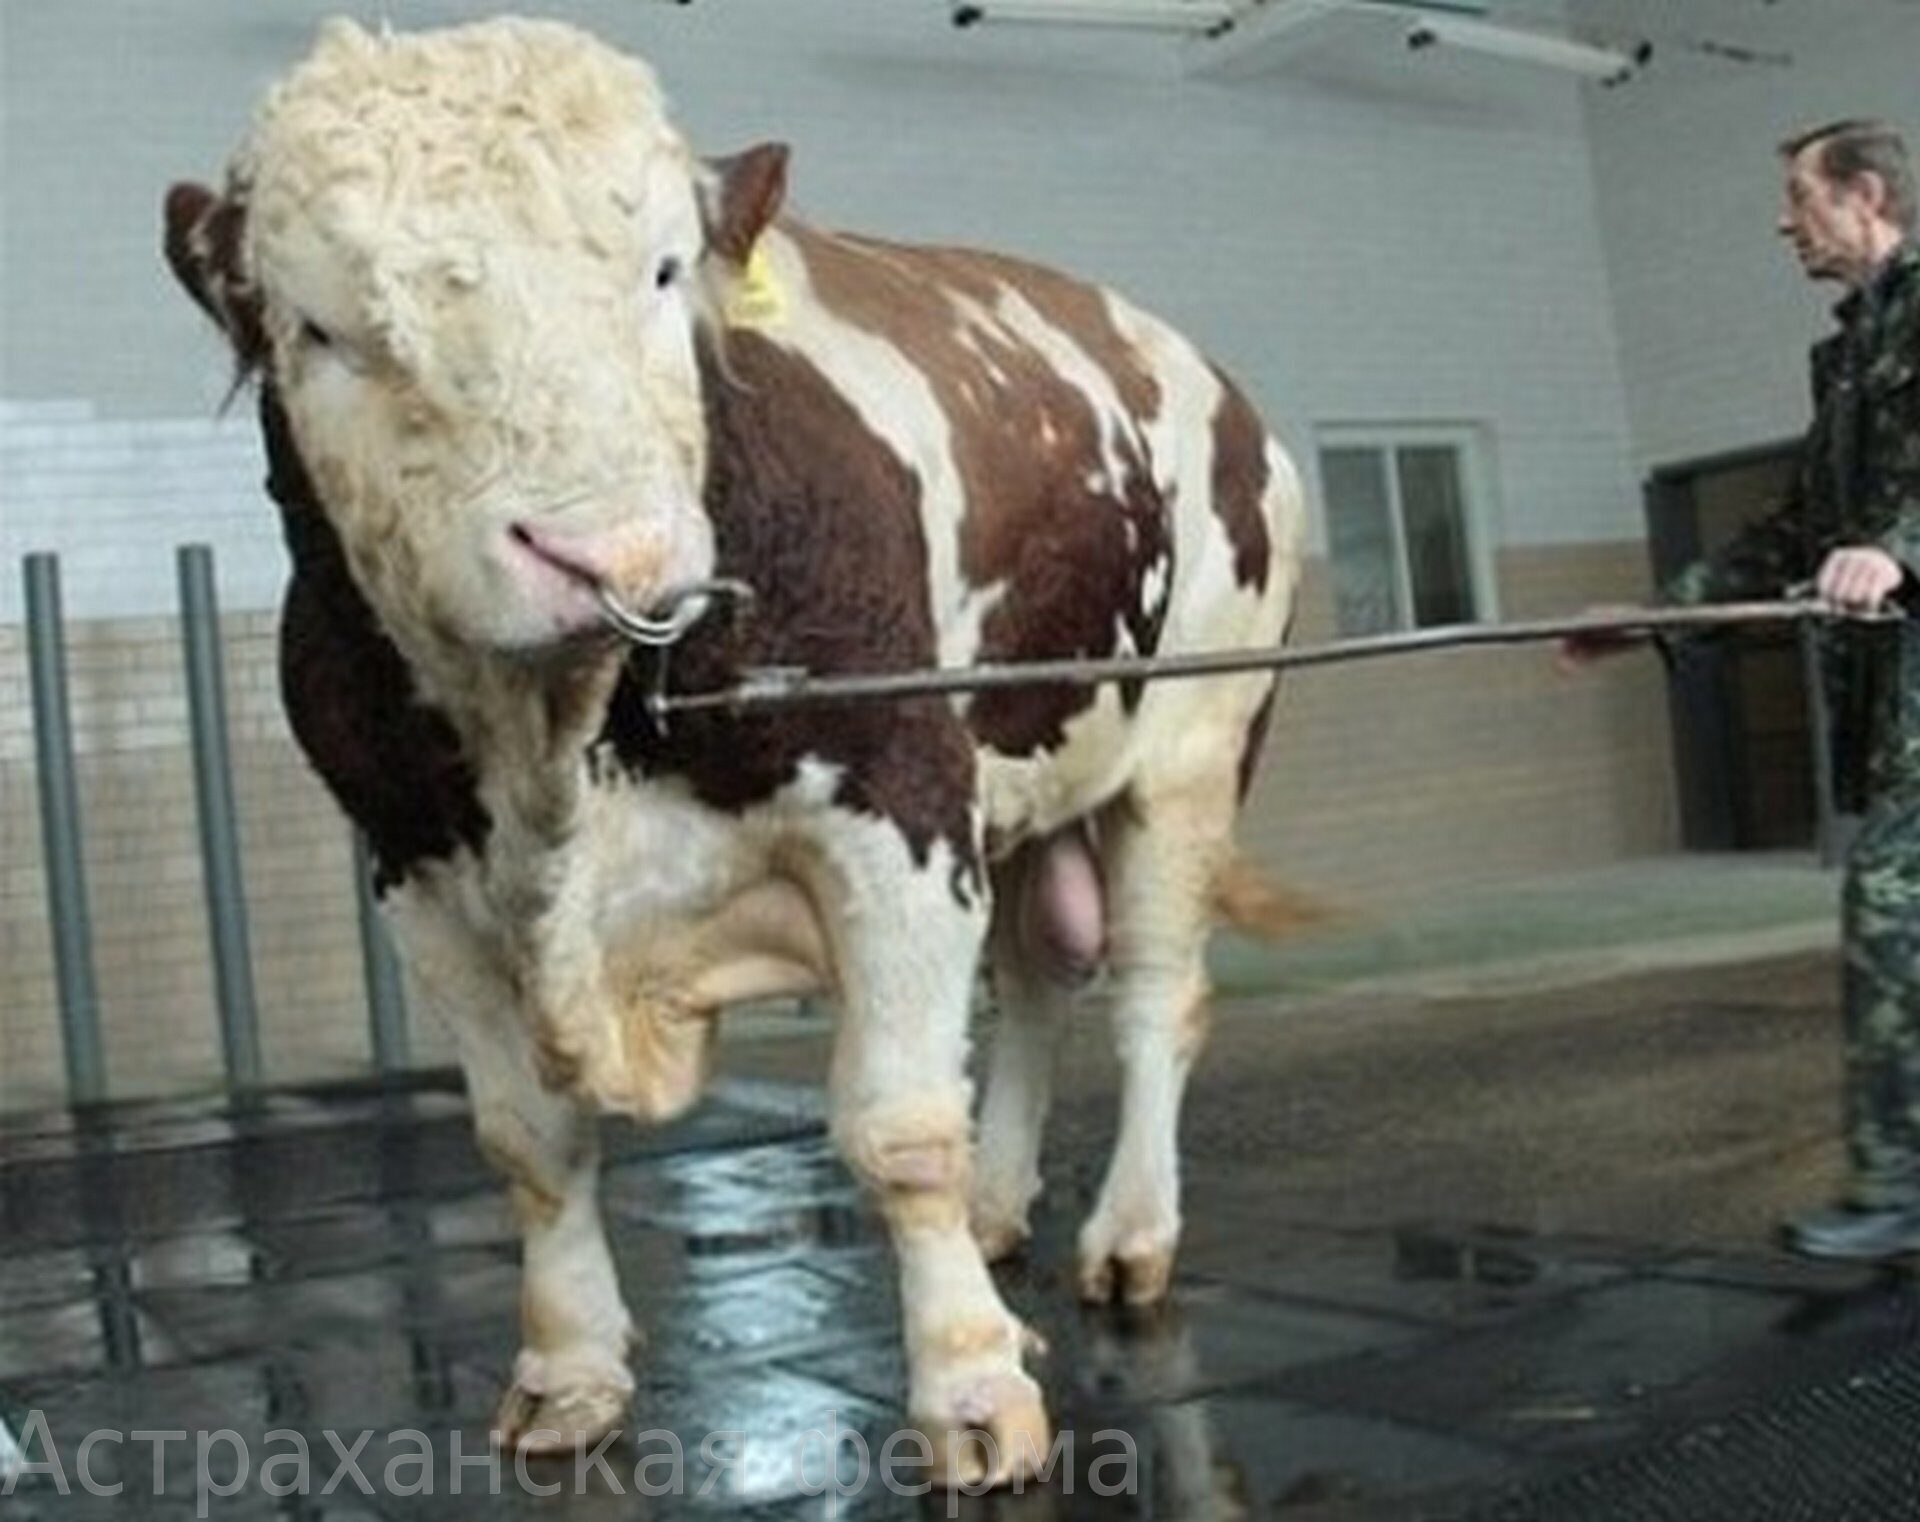 Иркутск крс. Самый большой бык осеменитель в мире. Репп бык Подольской породы. Самый большой бык в мире вес. Бык 1.5 тонны.